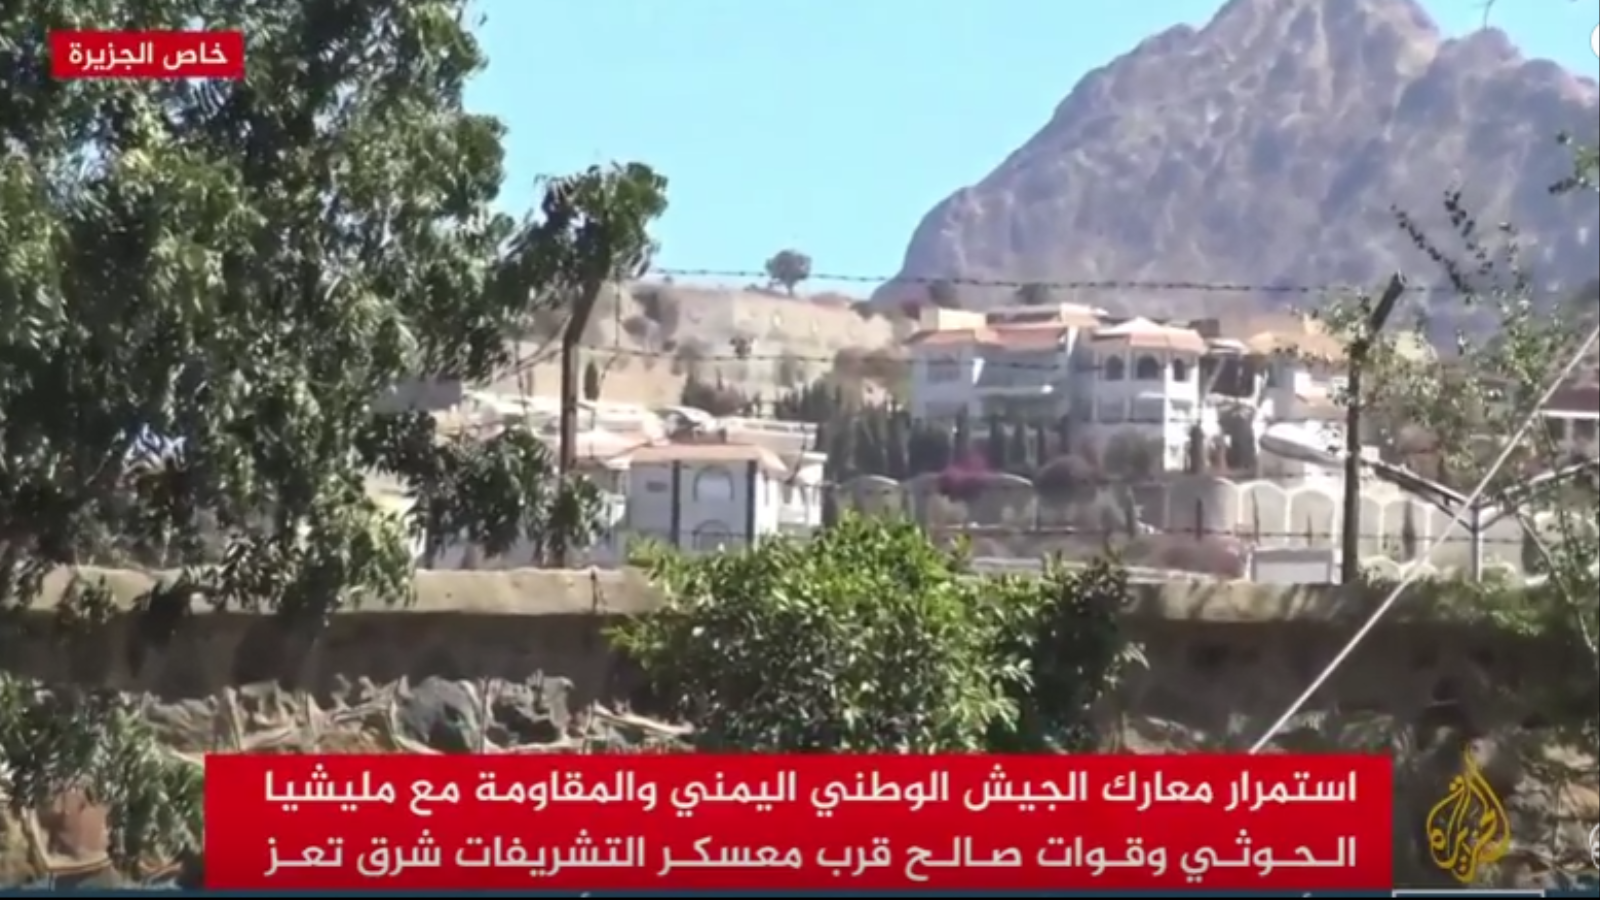 ‪معسكر التشريفات كان خط الدفاع الأول لقوات الحوثي وصالح عن القصر الجمهوري‬ (الجزيرة-أرشيف)